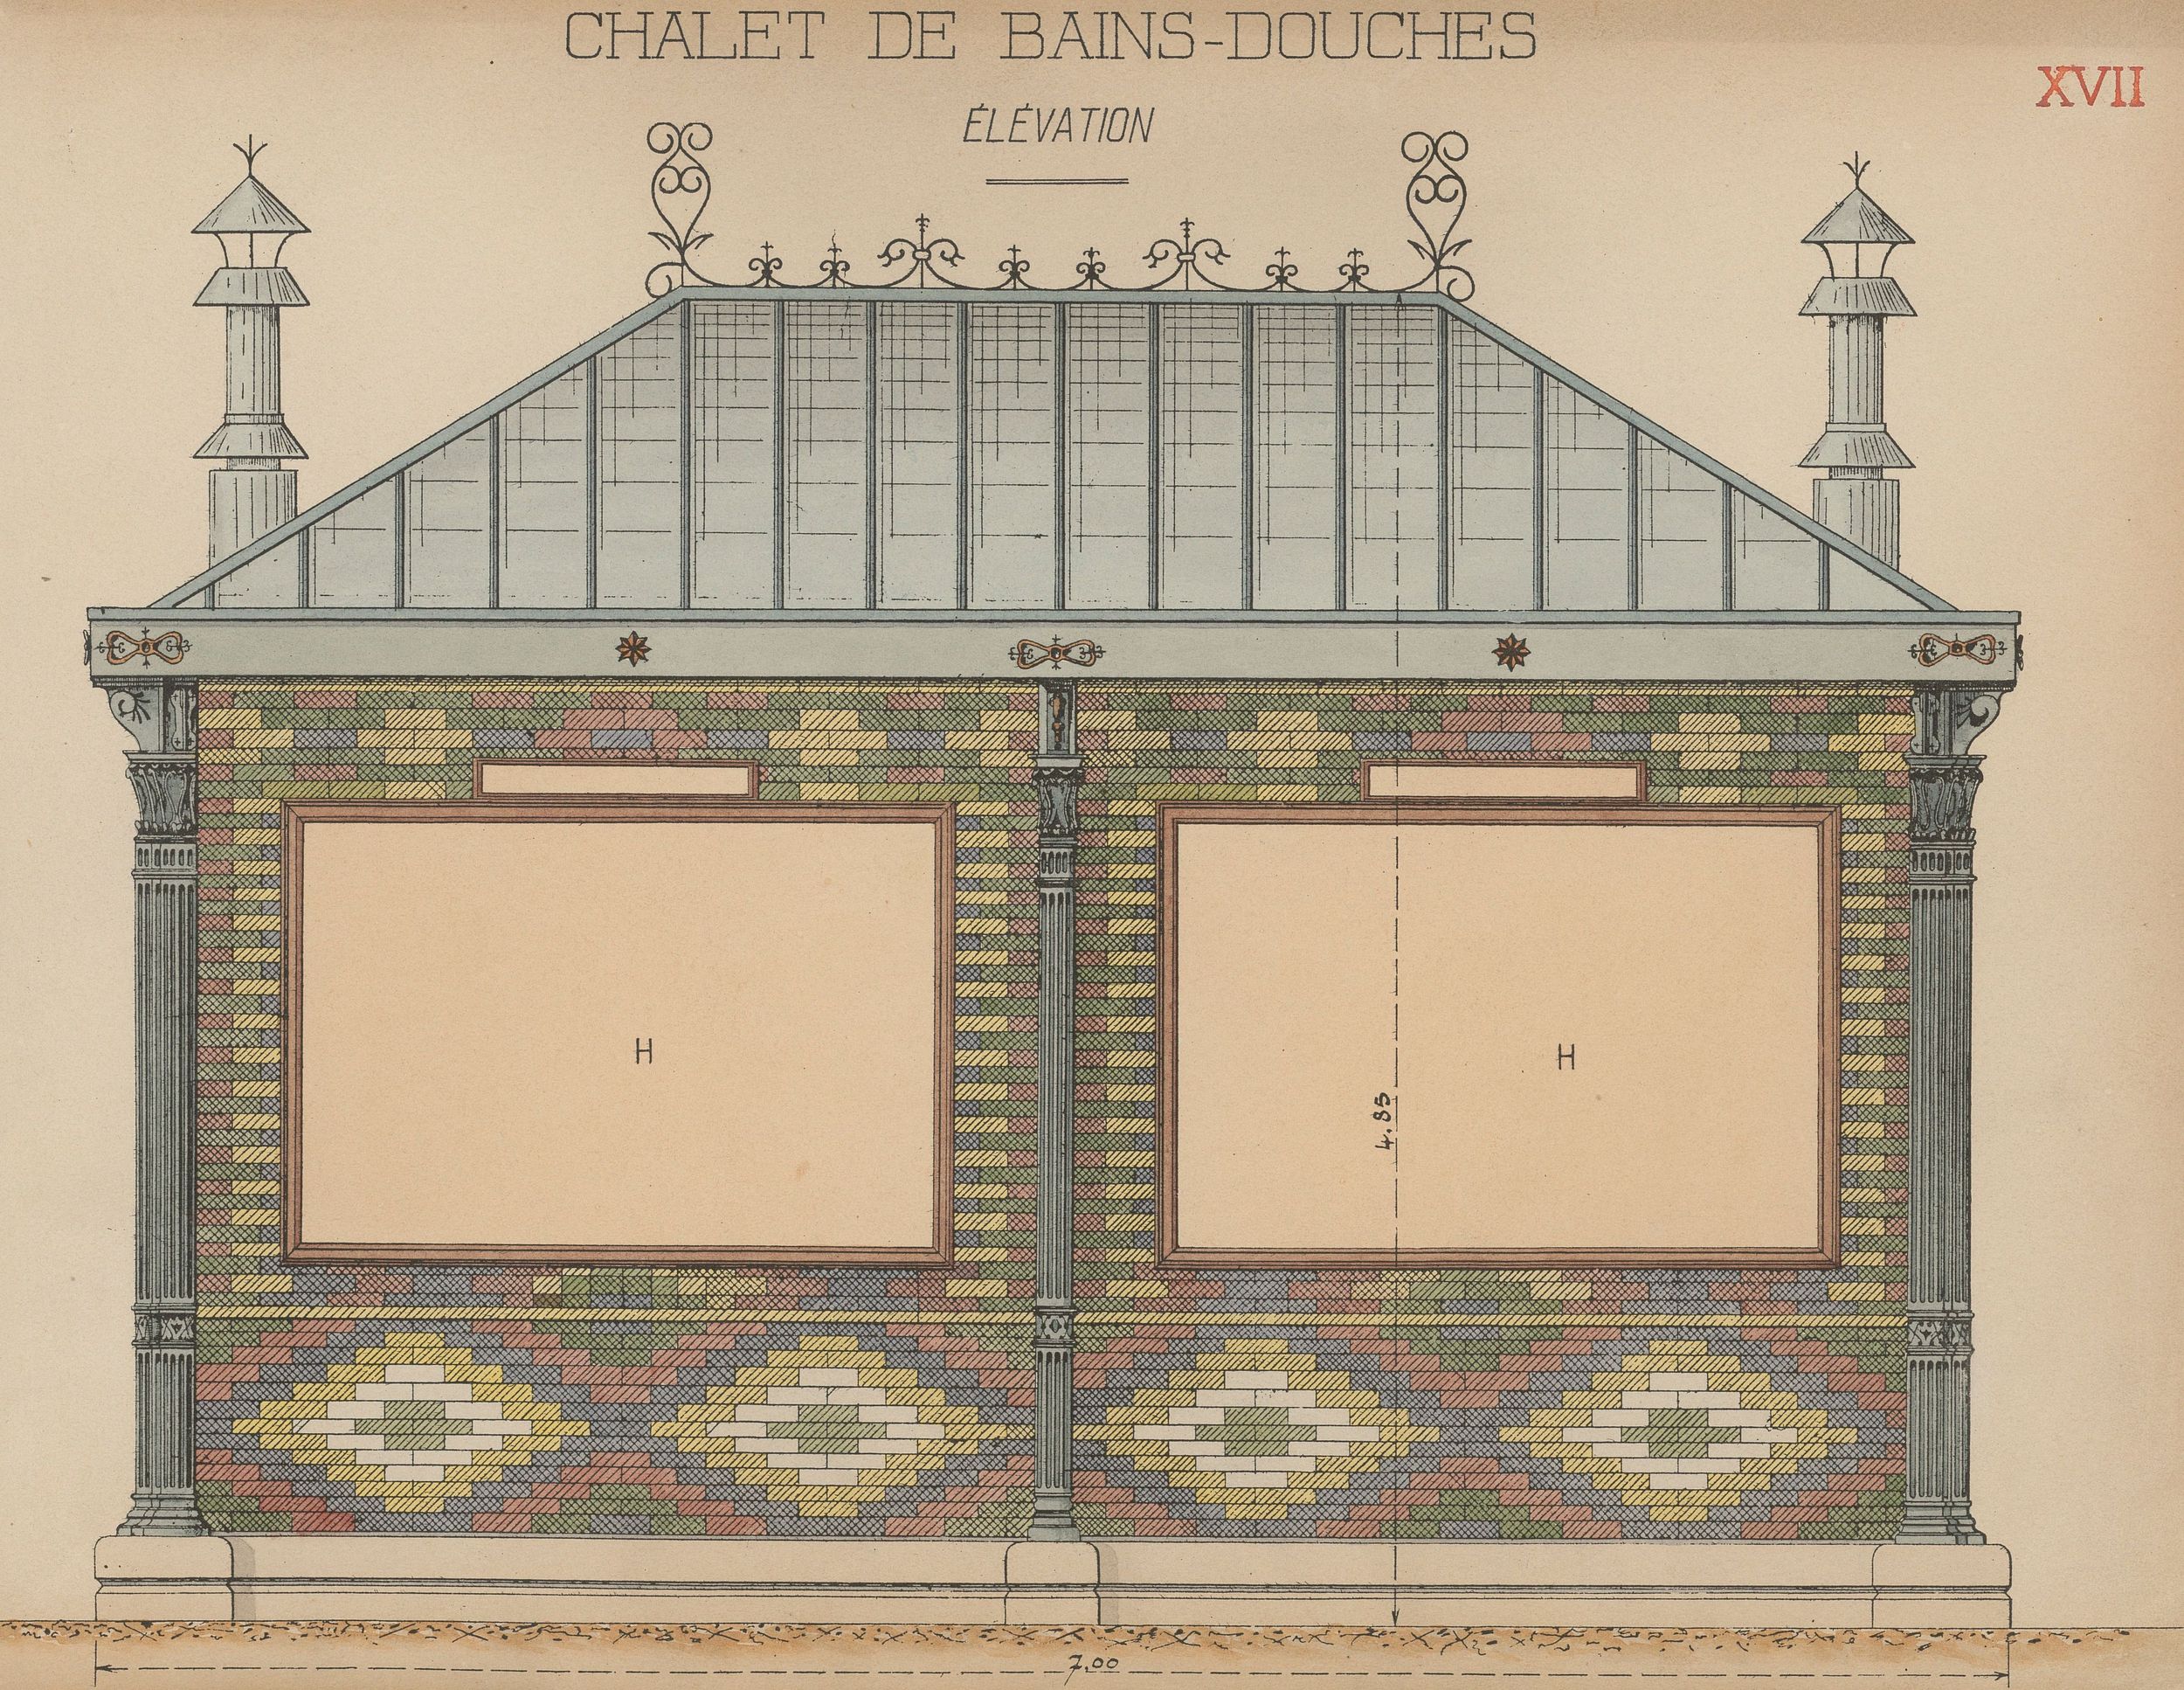 Chalet de bains-douches élévation (plan) : dessin manuscrit couleur sur papier cartonné par le Service municipal de la voirie (1914-1915, 3SAT/24/20)